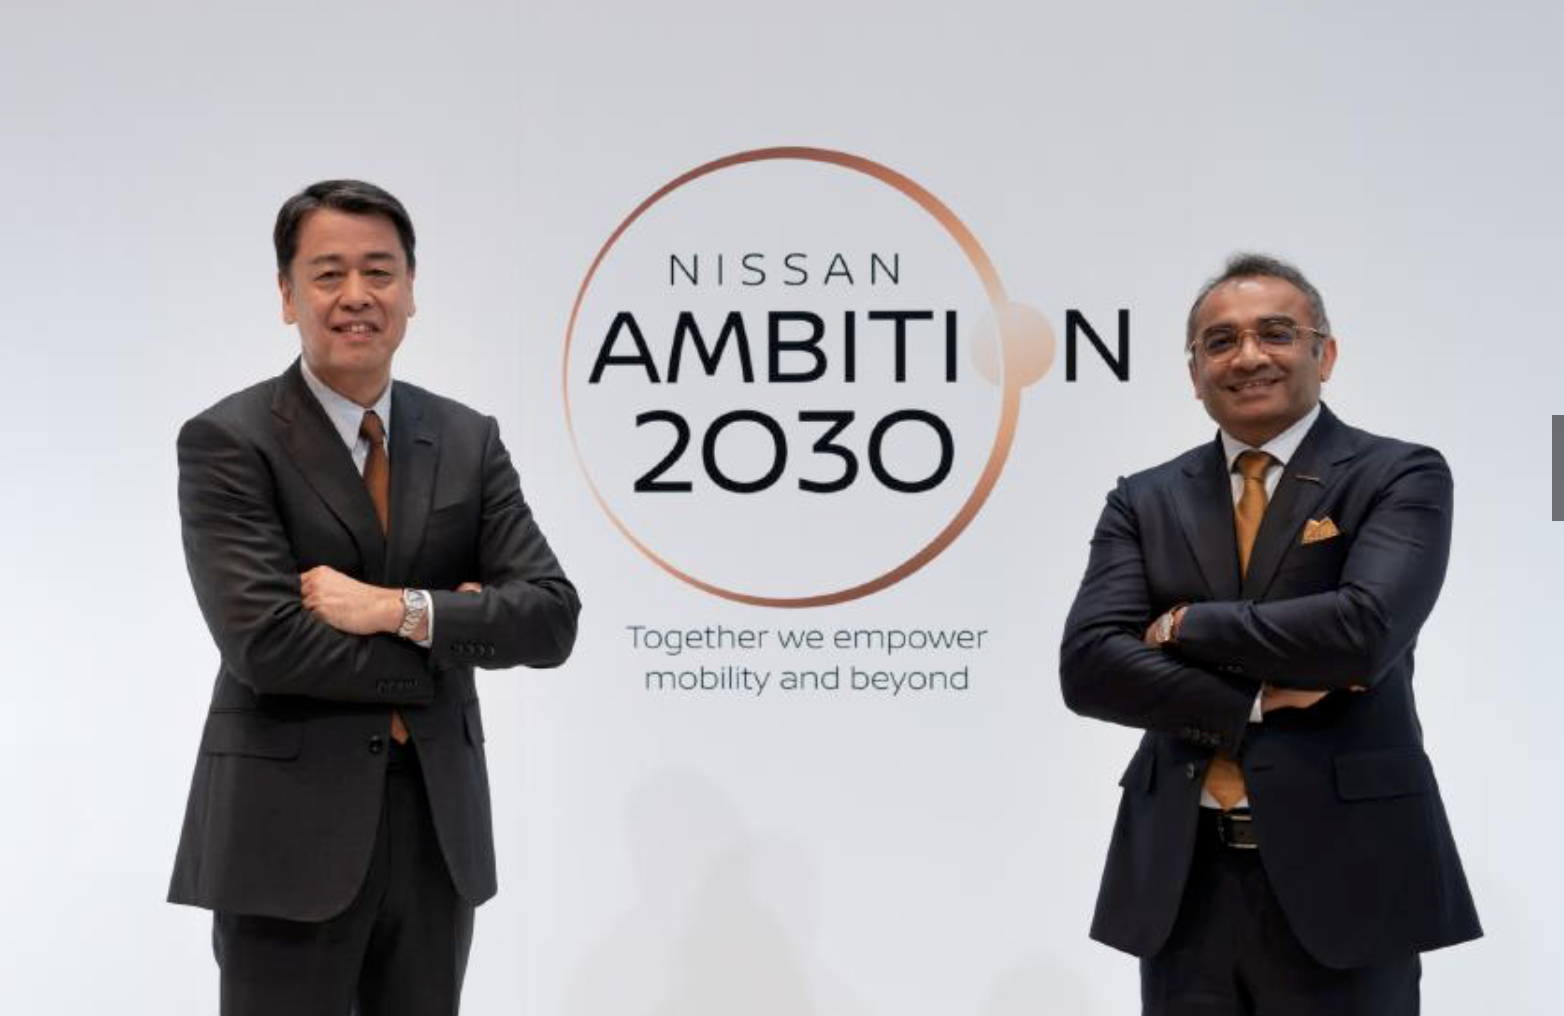 Nissan streeft naar 50% elektrificatie met solid-state batterij in 2030